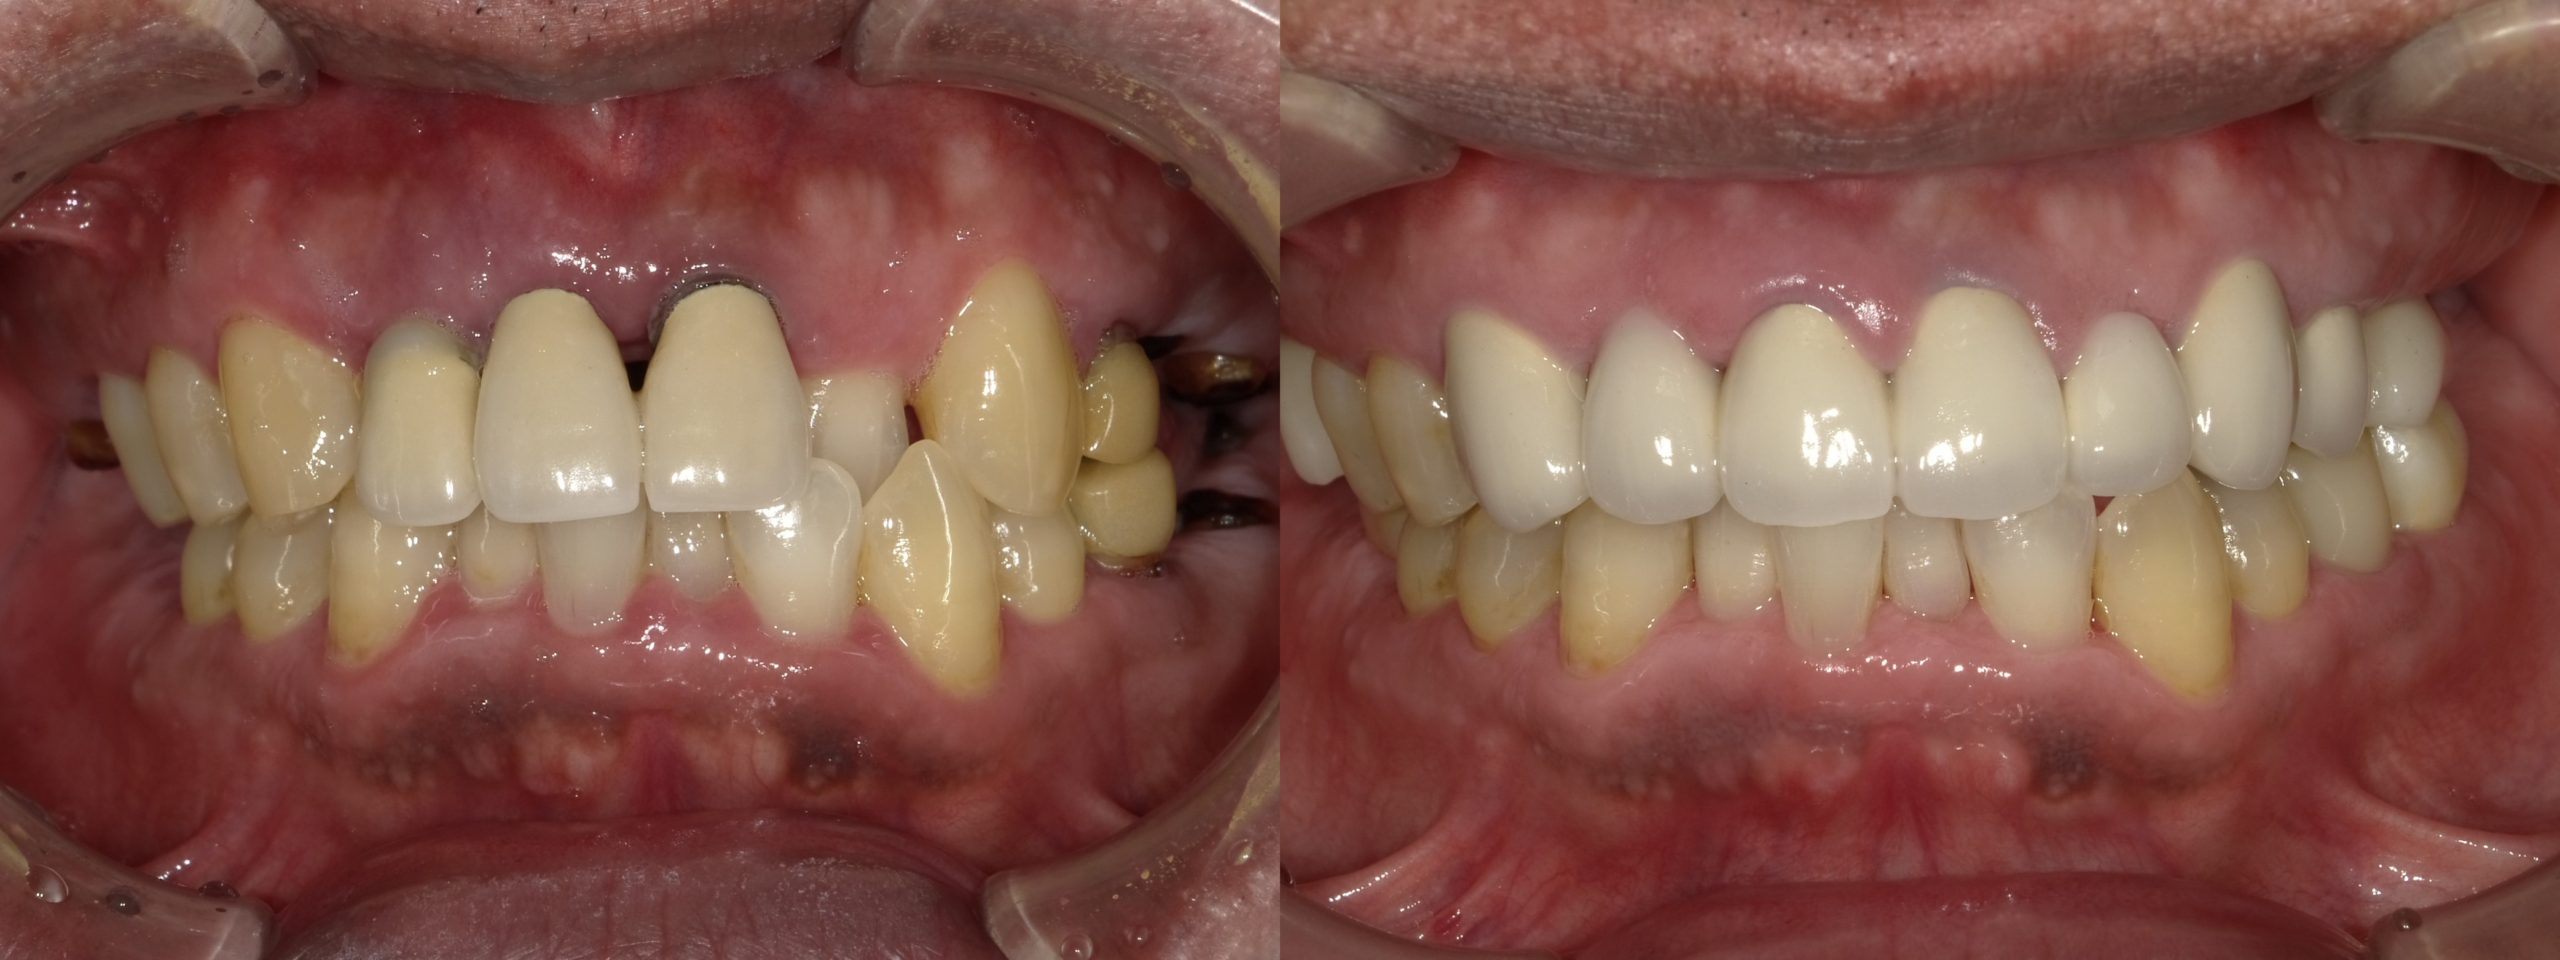 大臼歯部にインプラントを用いて咬合を確保し、前歯部は歯の移植を用いて審美性を獲得した症例